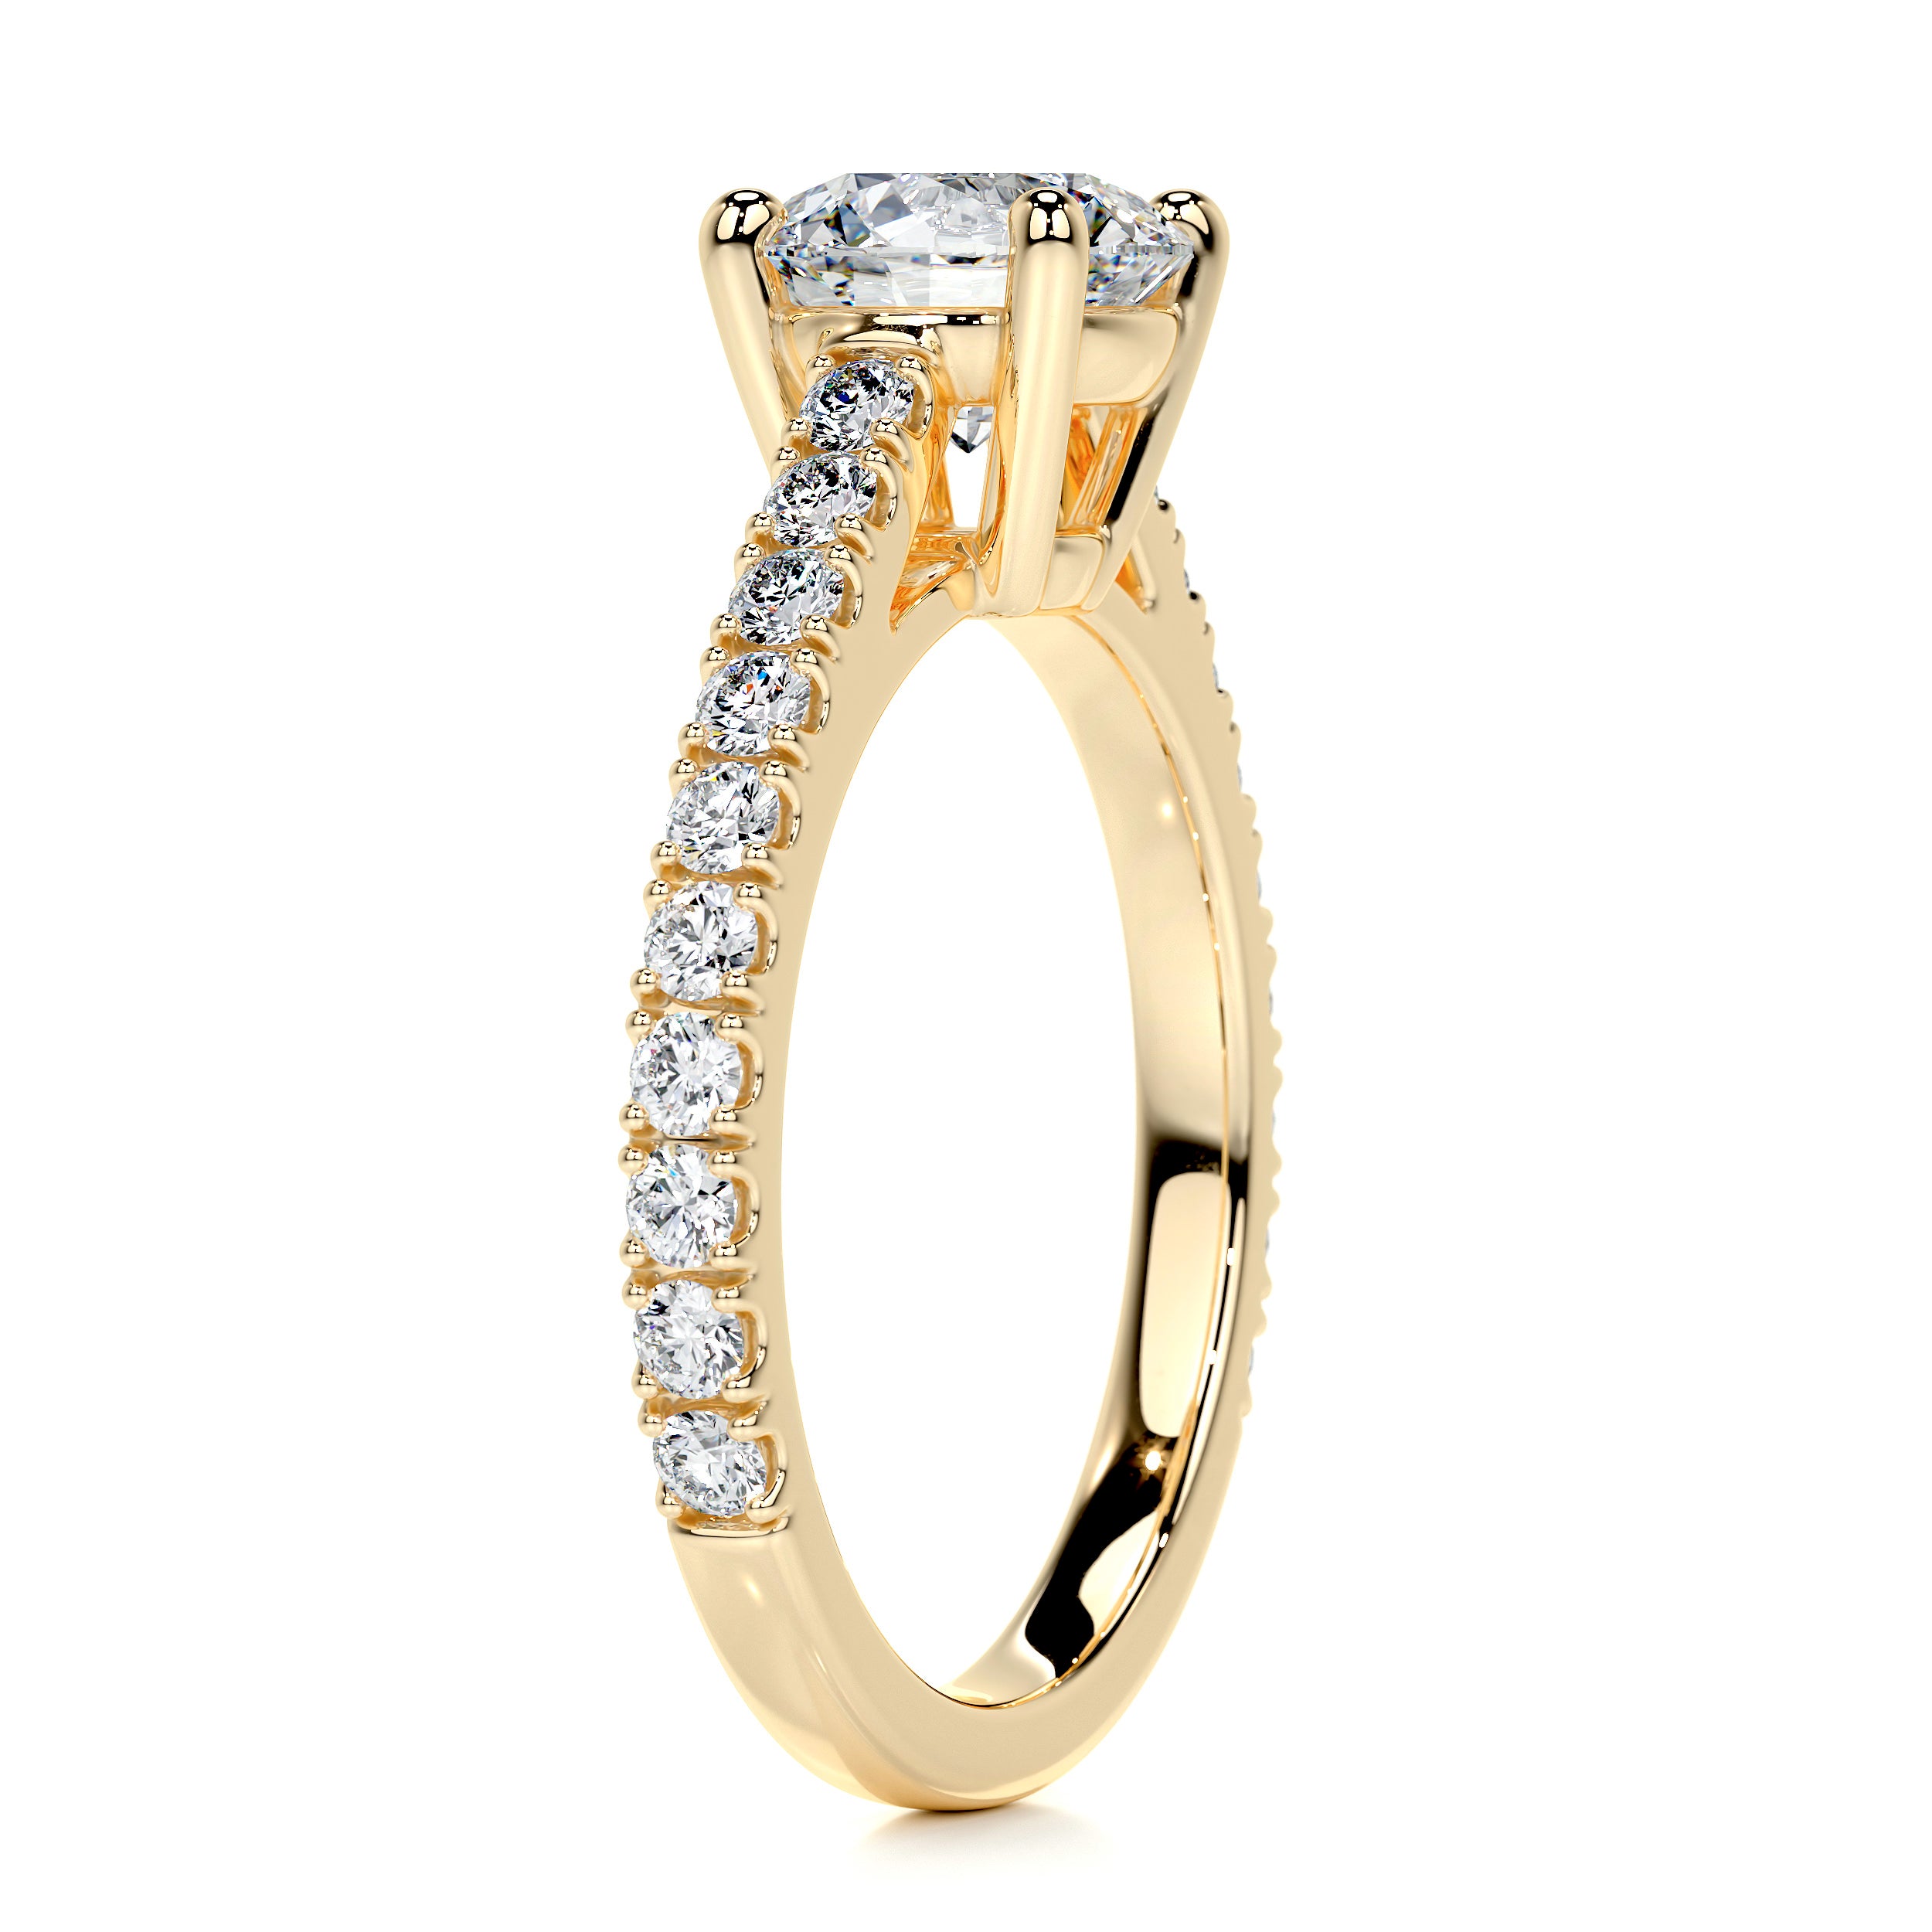 Aria Diamond Engagement Ring   (1 Carat) -18K Yellow Gold